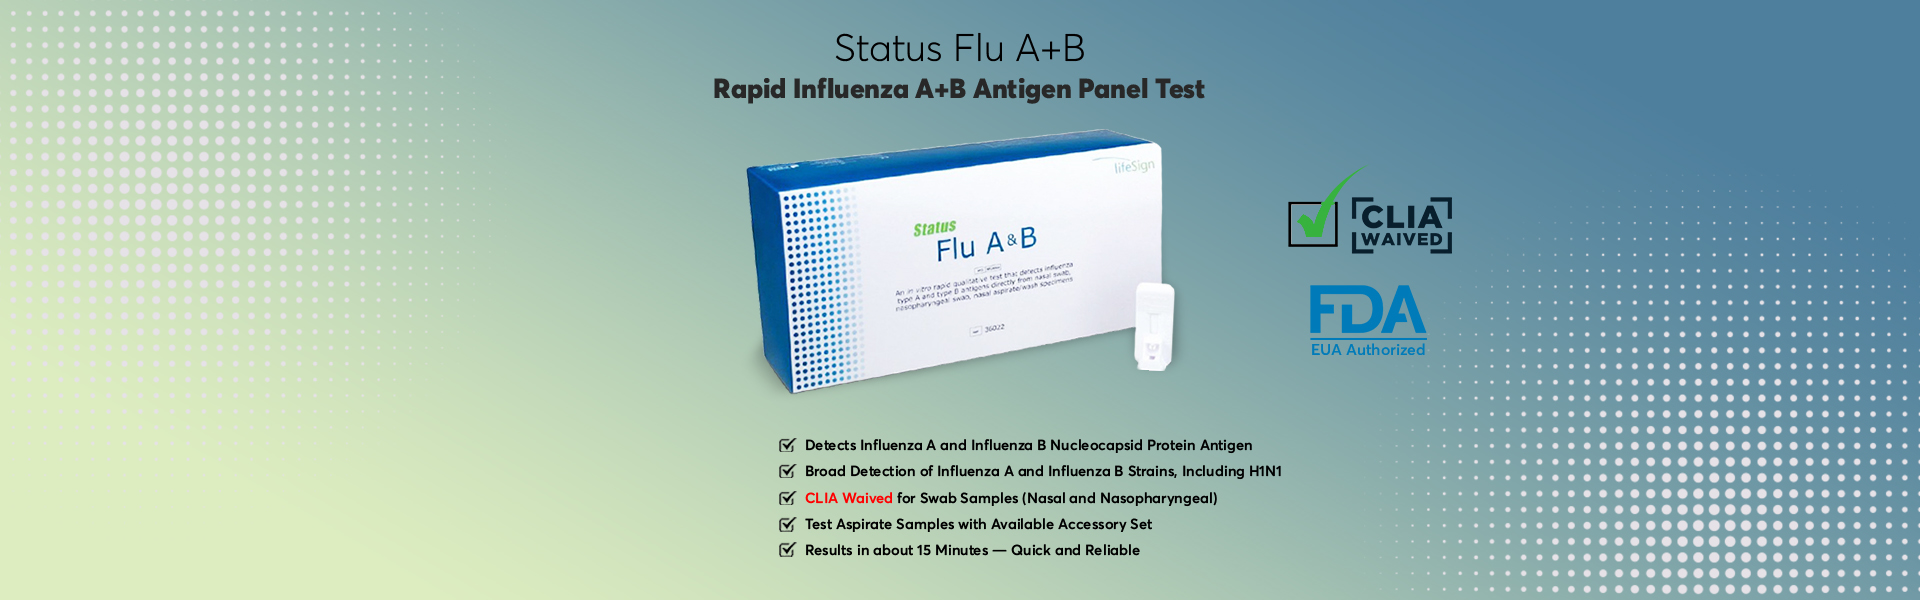 Status Flu A & B - Home Banner